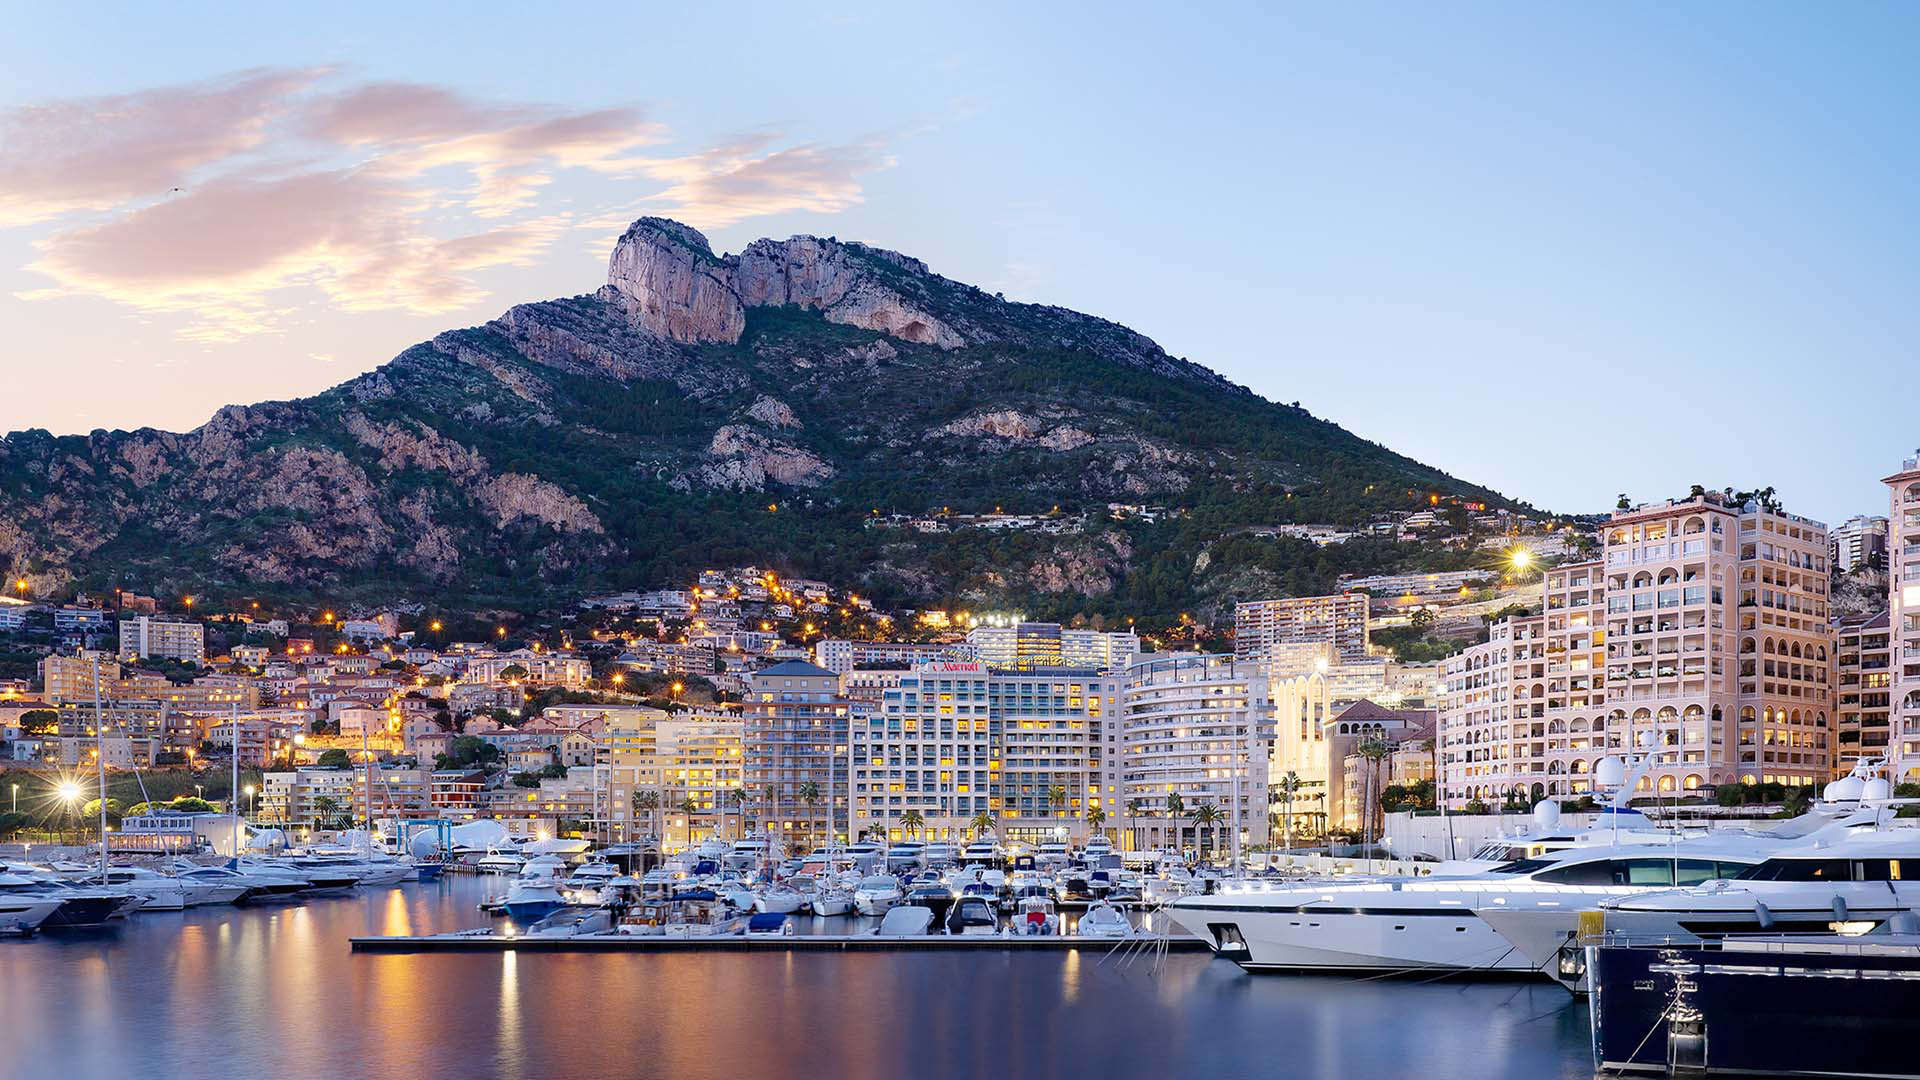 Schillernde Aussicht auf den Hafen von Monaco Ville (Porte Hercule) in Monaco, Côte d'Azur, Mittelmeer, Europa